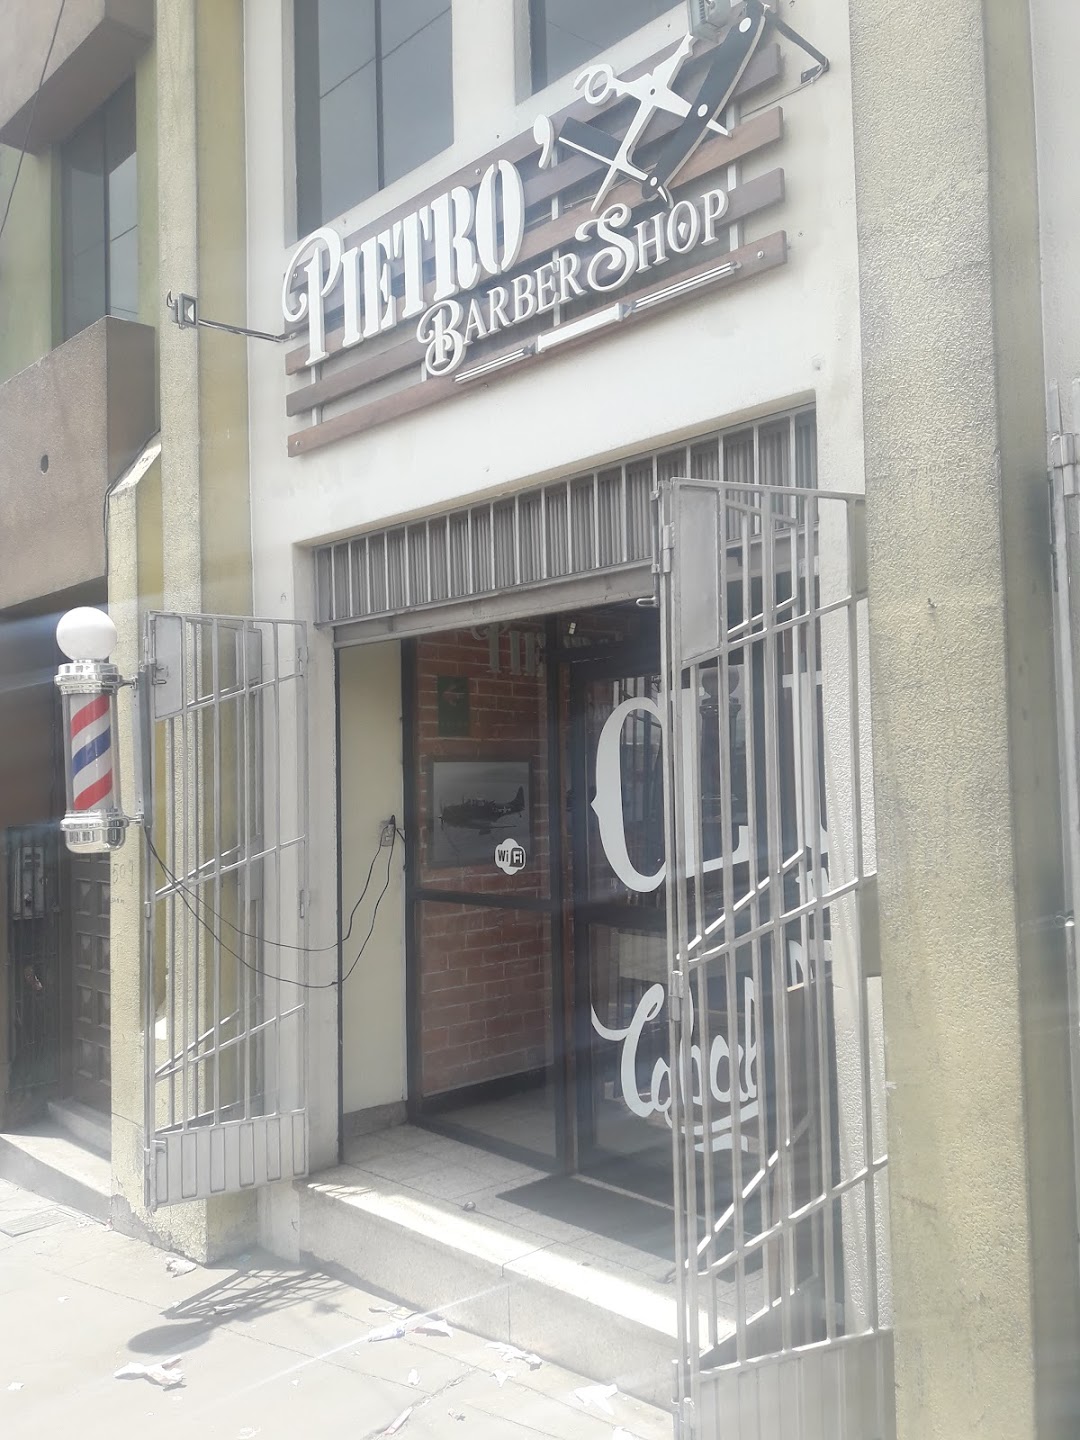 Pietro Barber Shop